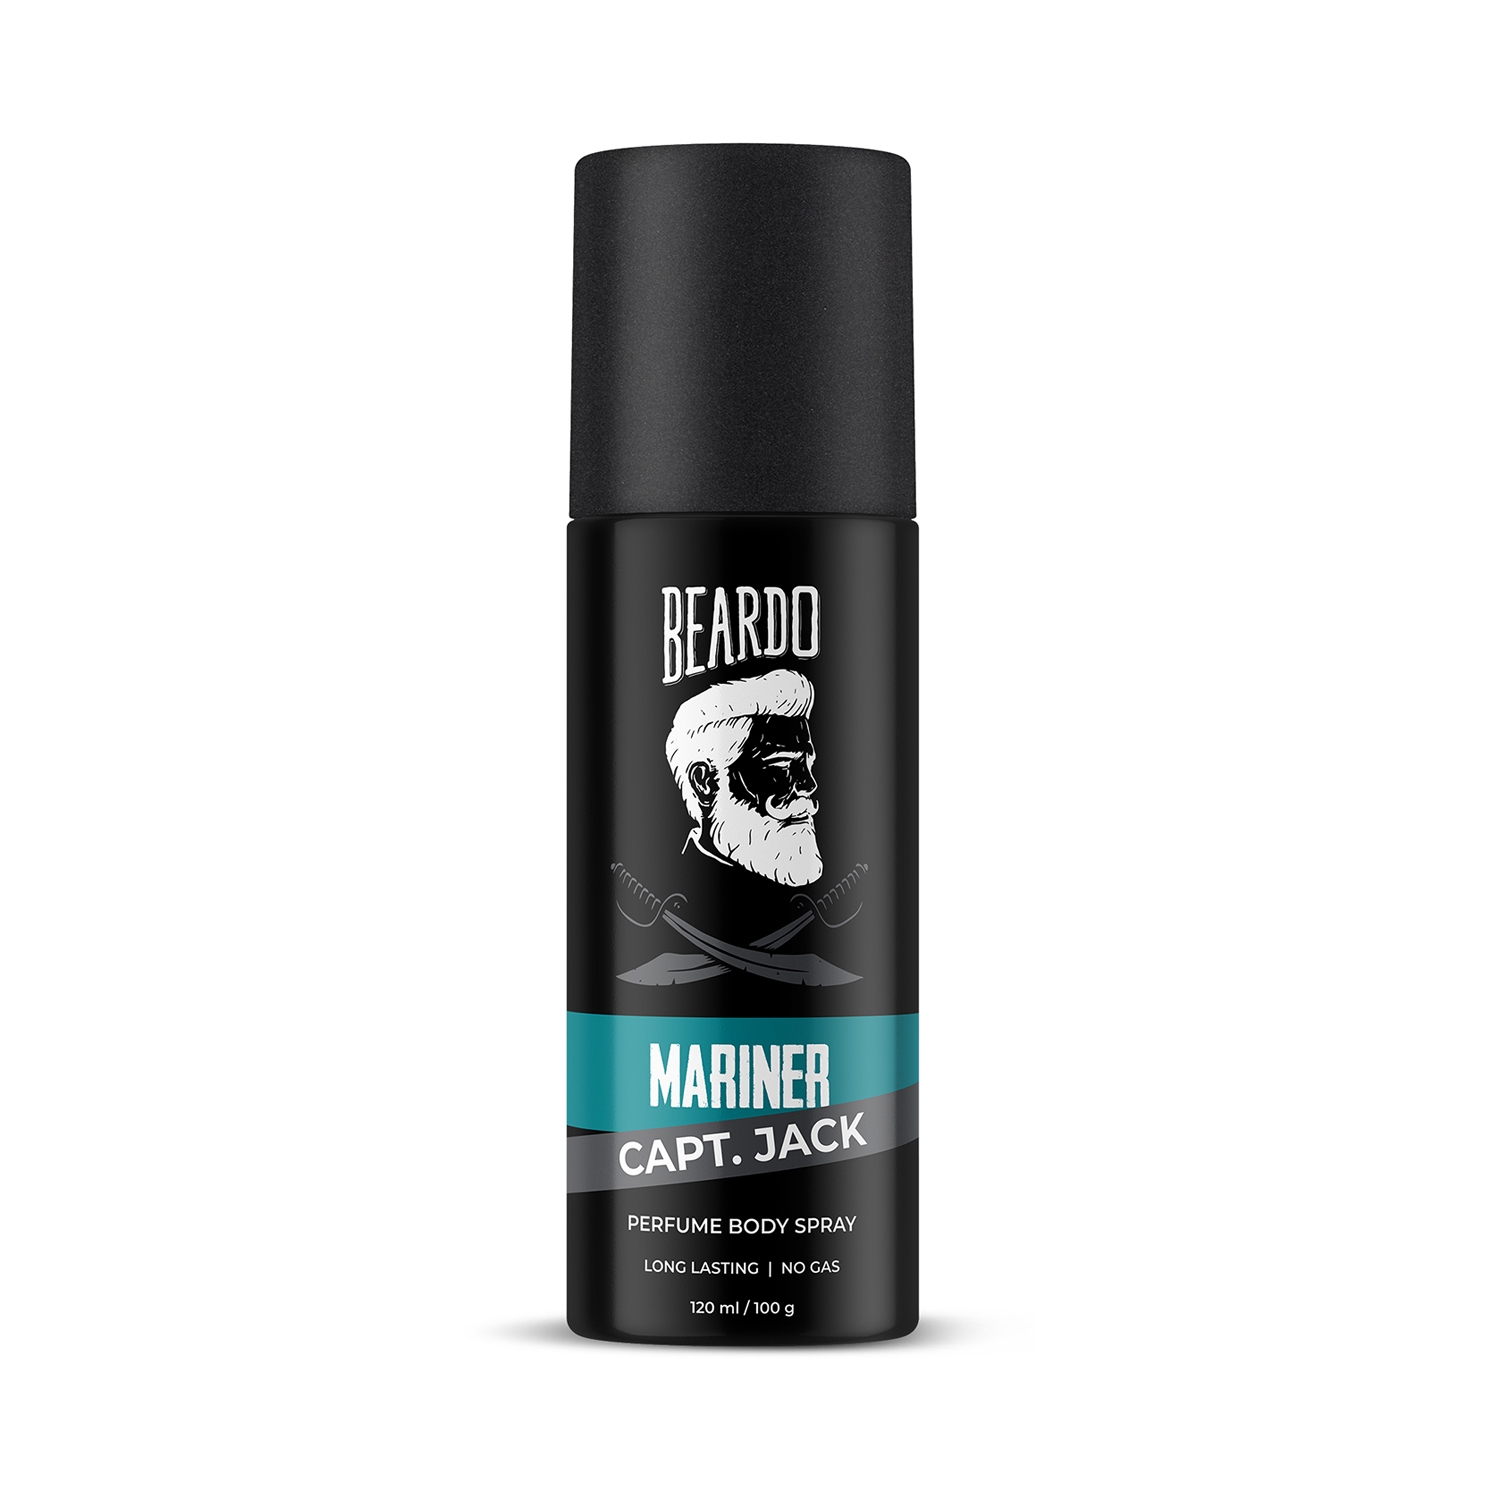 Buy Beard Oils, Wash & More Online From Beardo | LBB